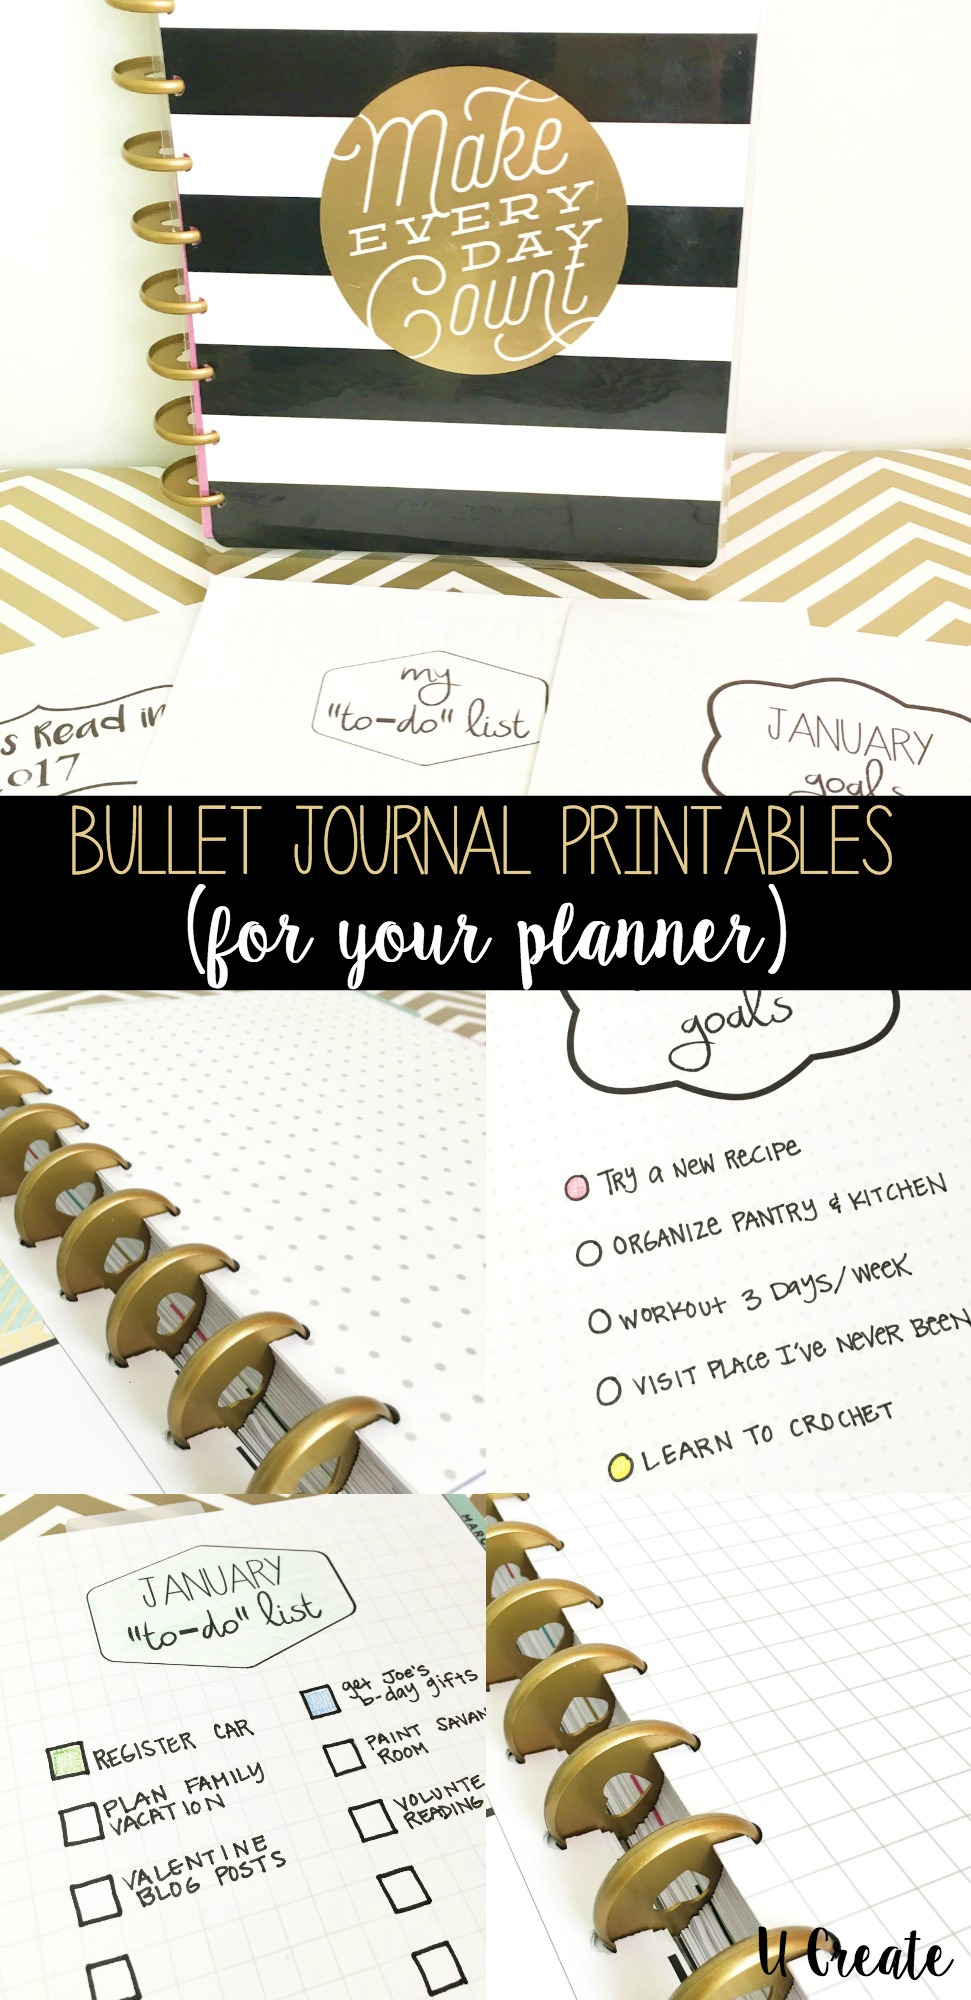 Bullet Journal Printables by U Create